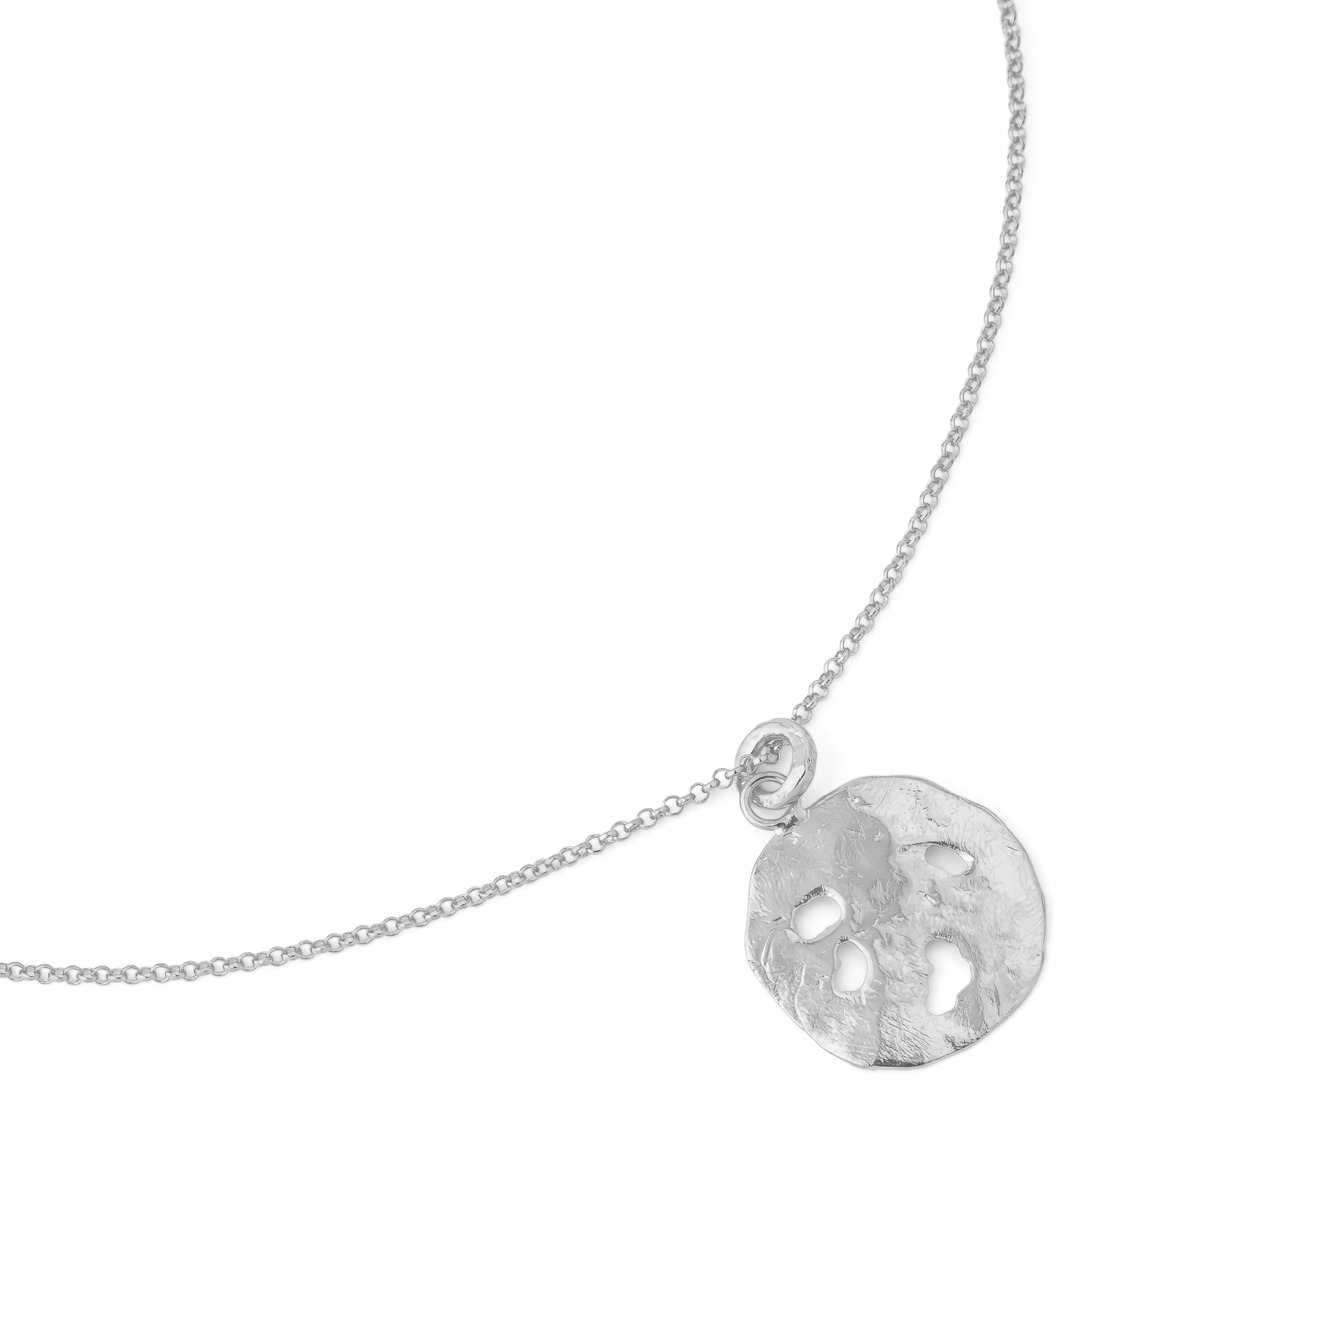 Sevenworlds Подвеска Pura Vida Medallion из бронзы с серебряным покрытием sevenworlds серьги phoenician из бронзы с серебряным покрытием